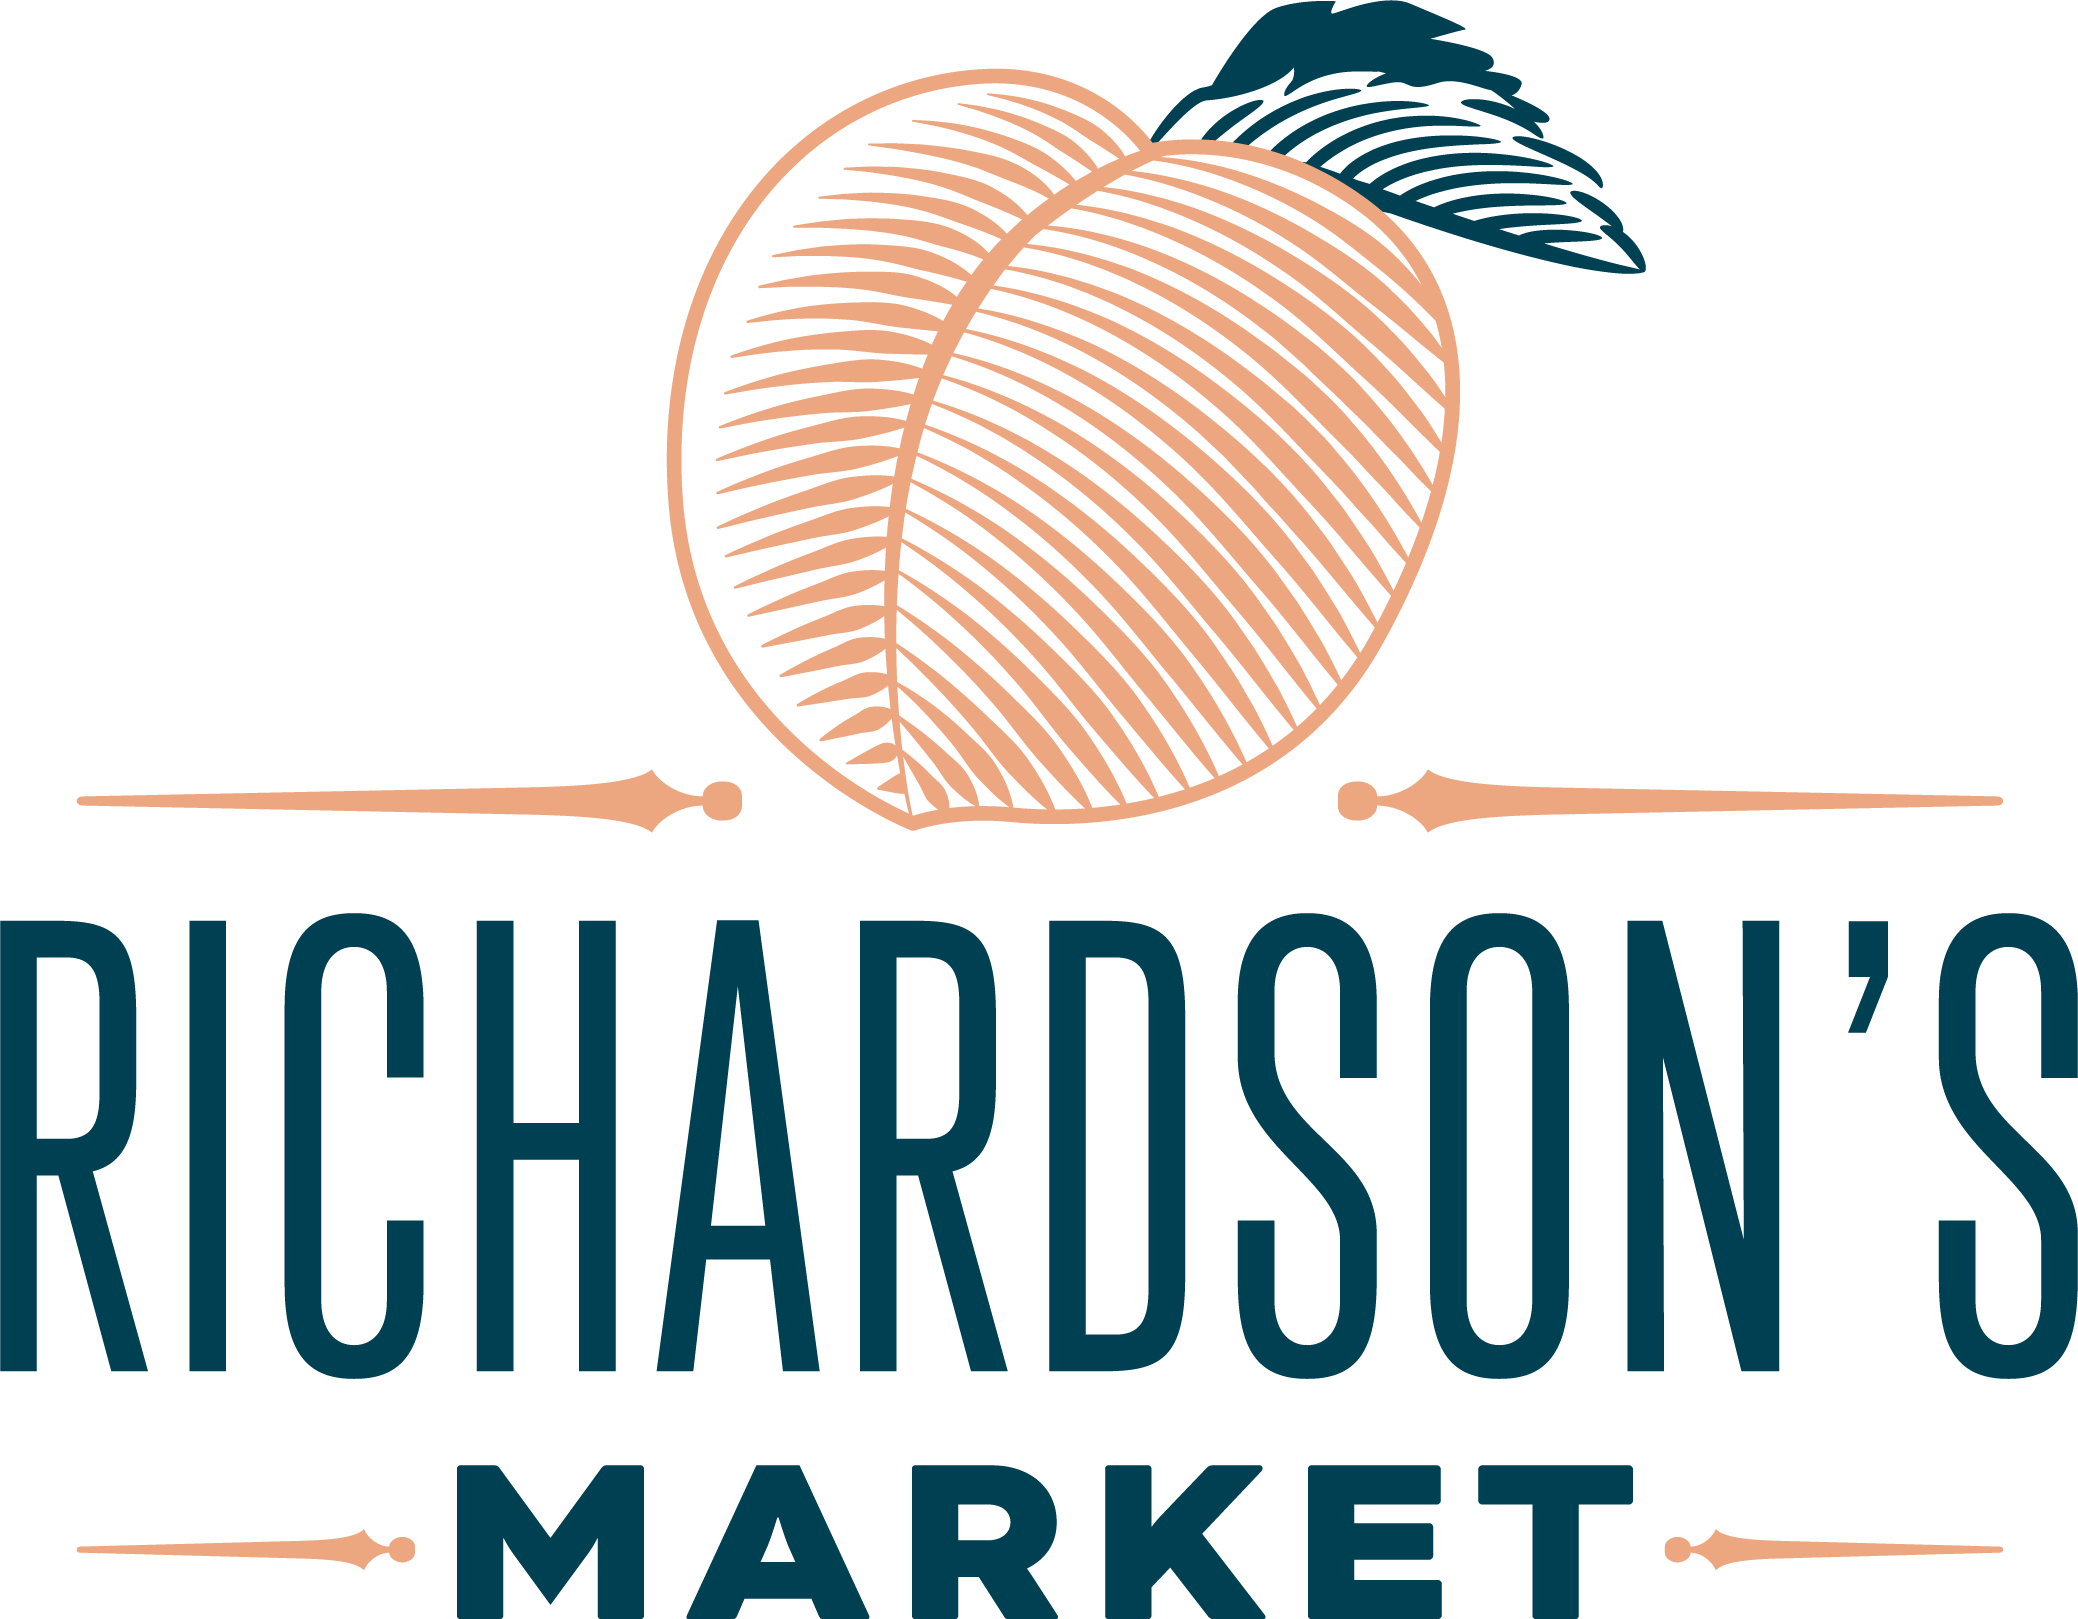 Richardson's Market